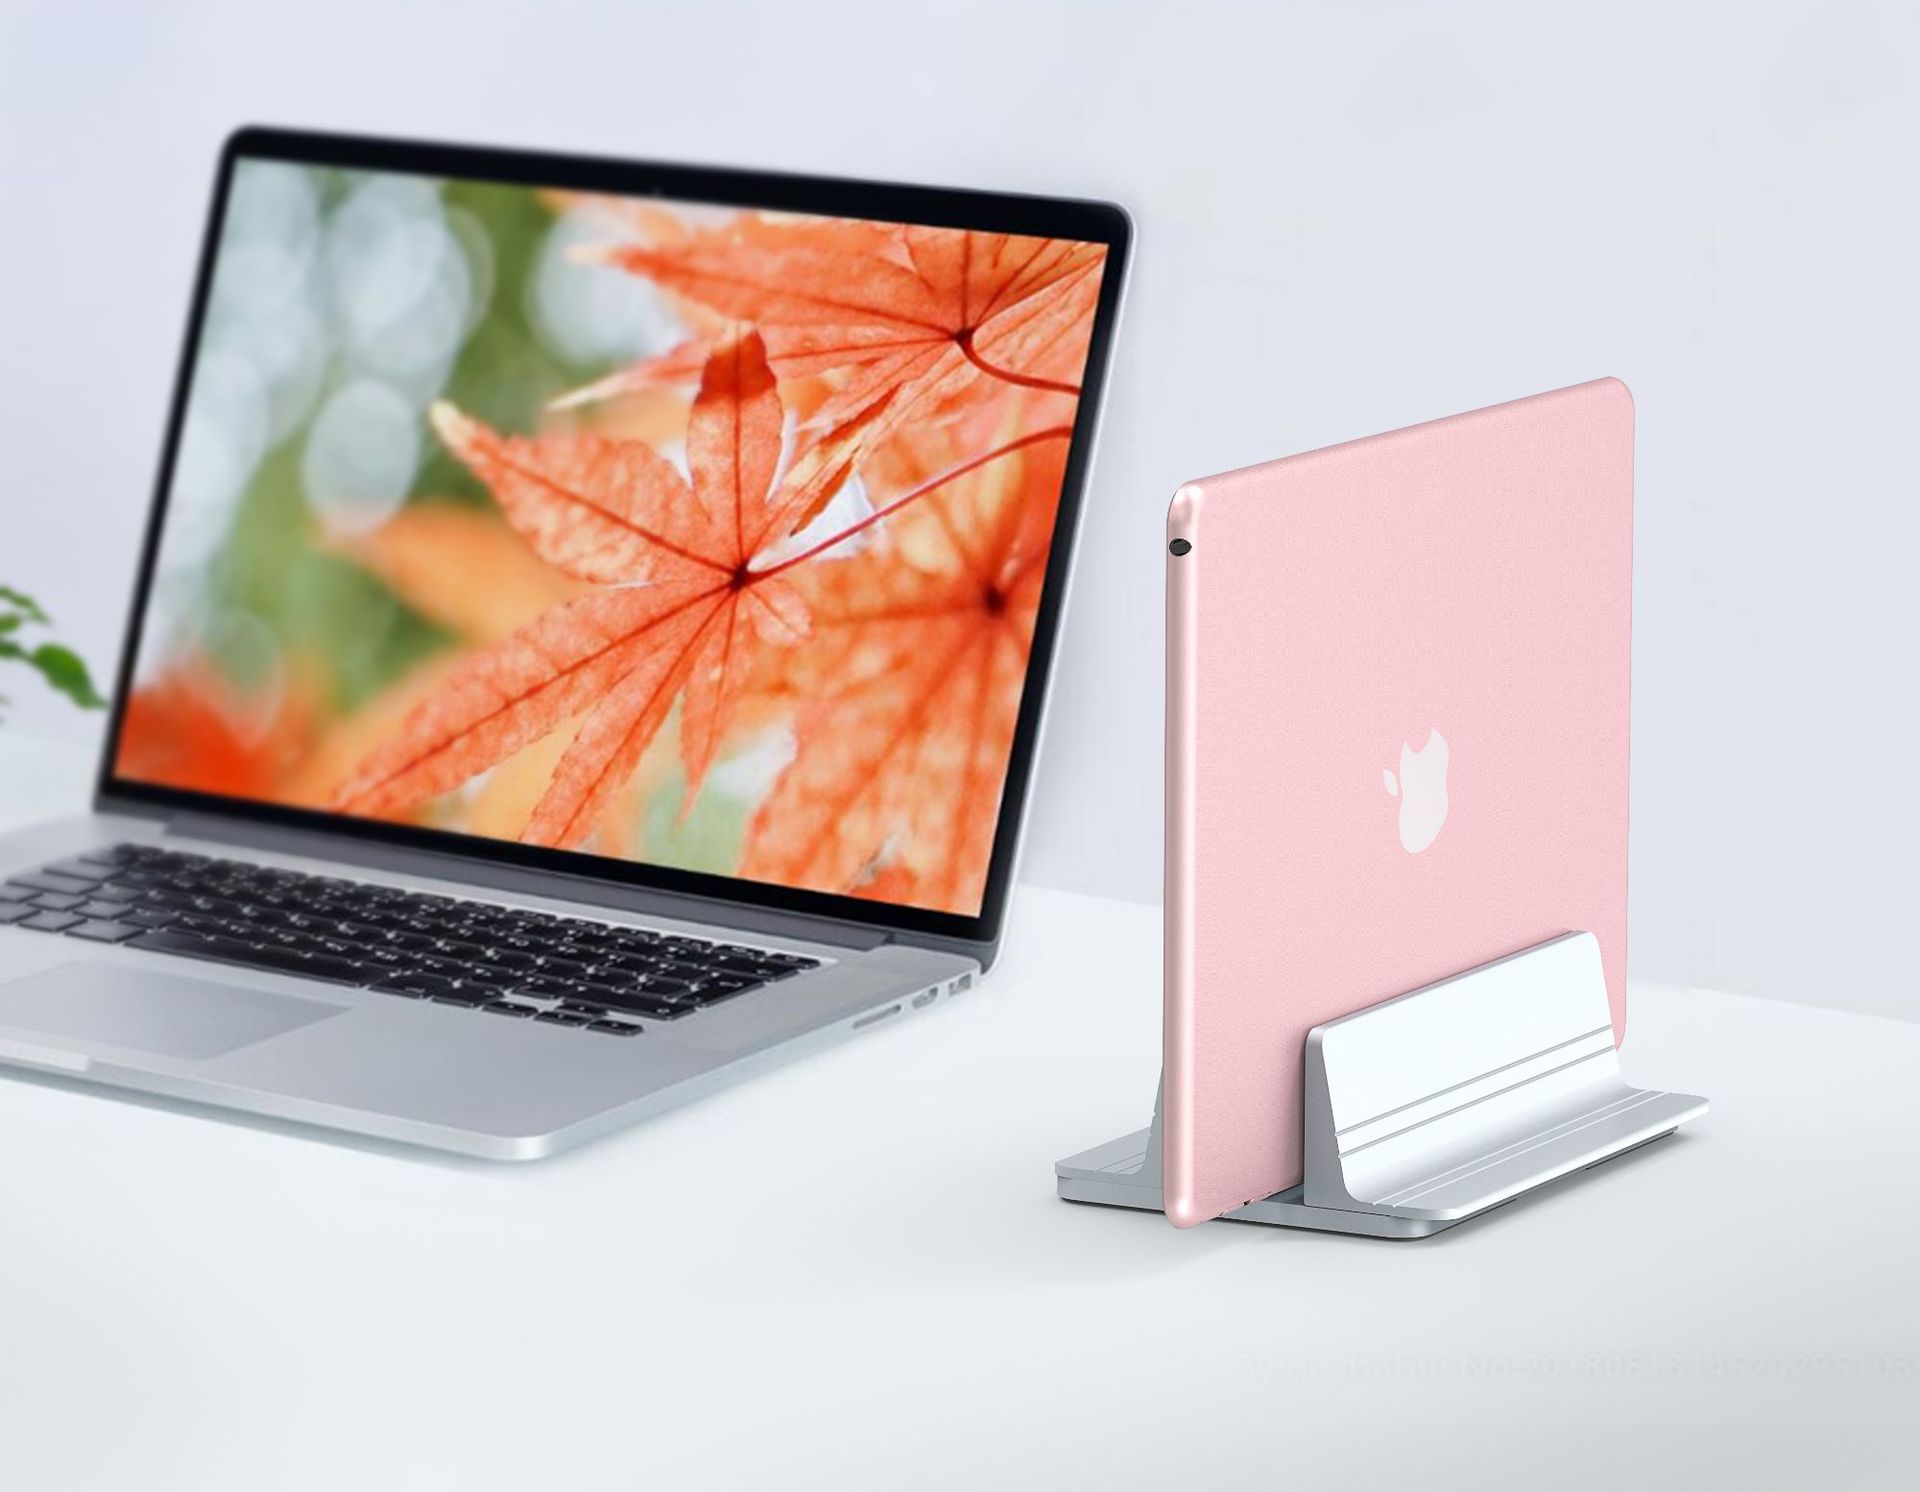 Adjustable-Vertical-Laptop-Stand-Holder-Desktop-Aluminum-MacBook-Stand-with-Adjustable-Dock-Size-for-1818928-3